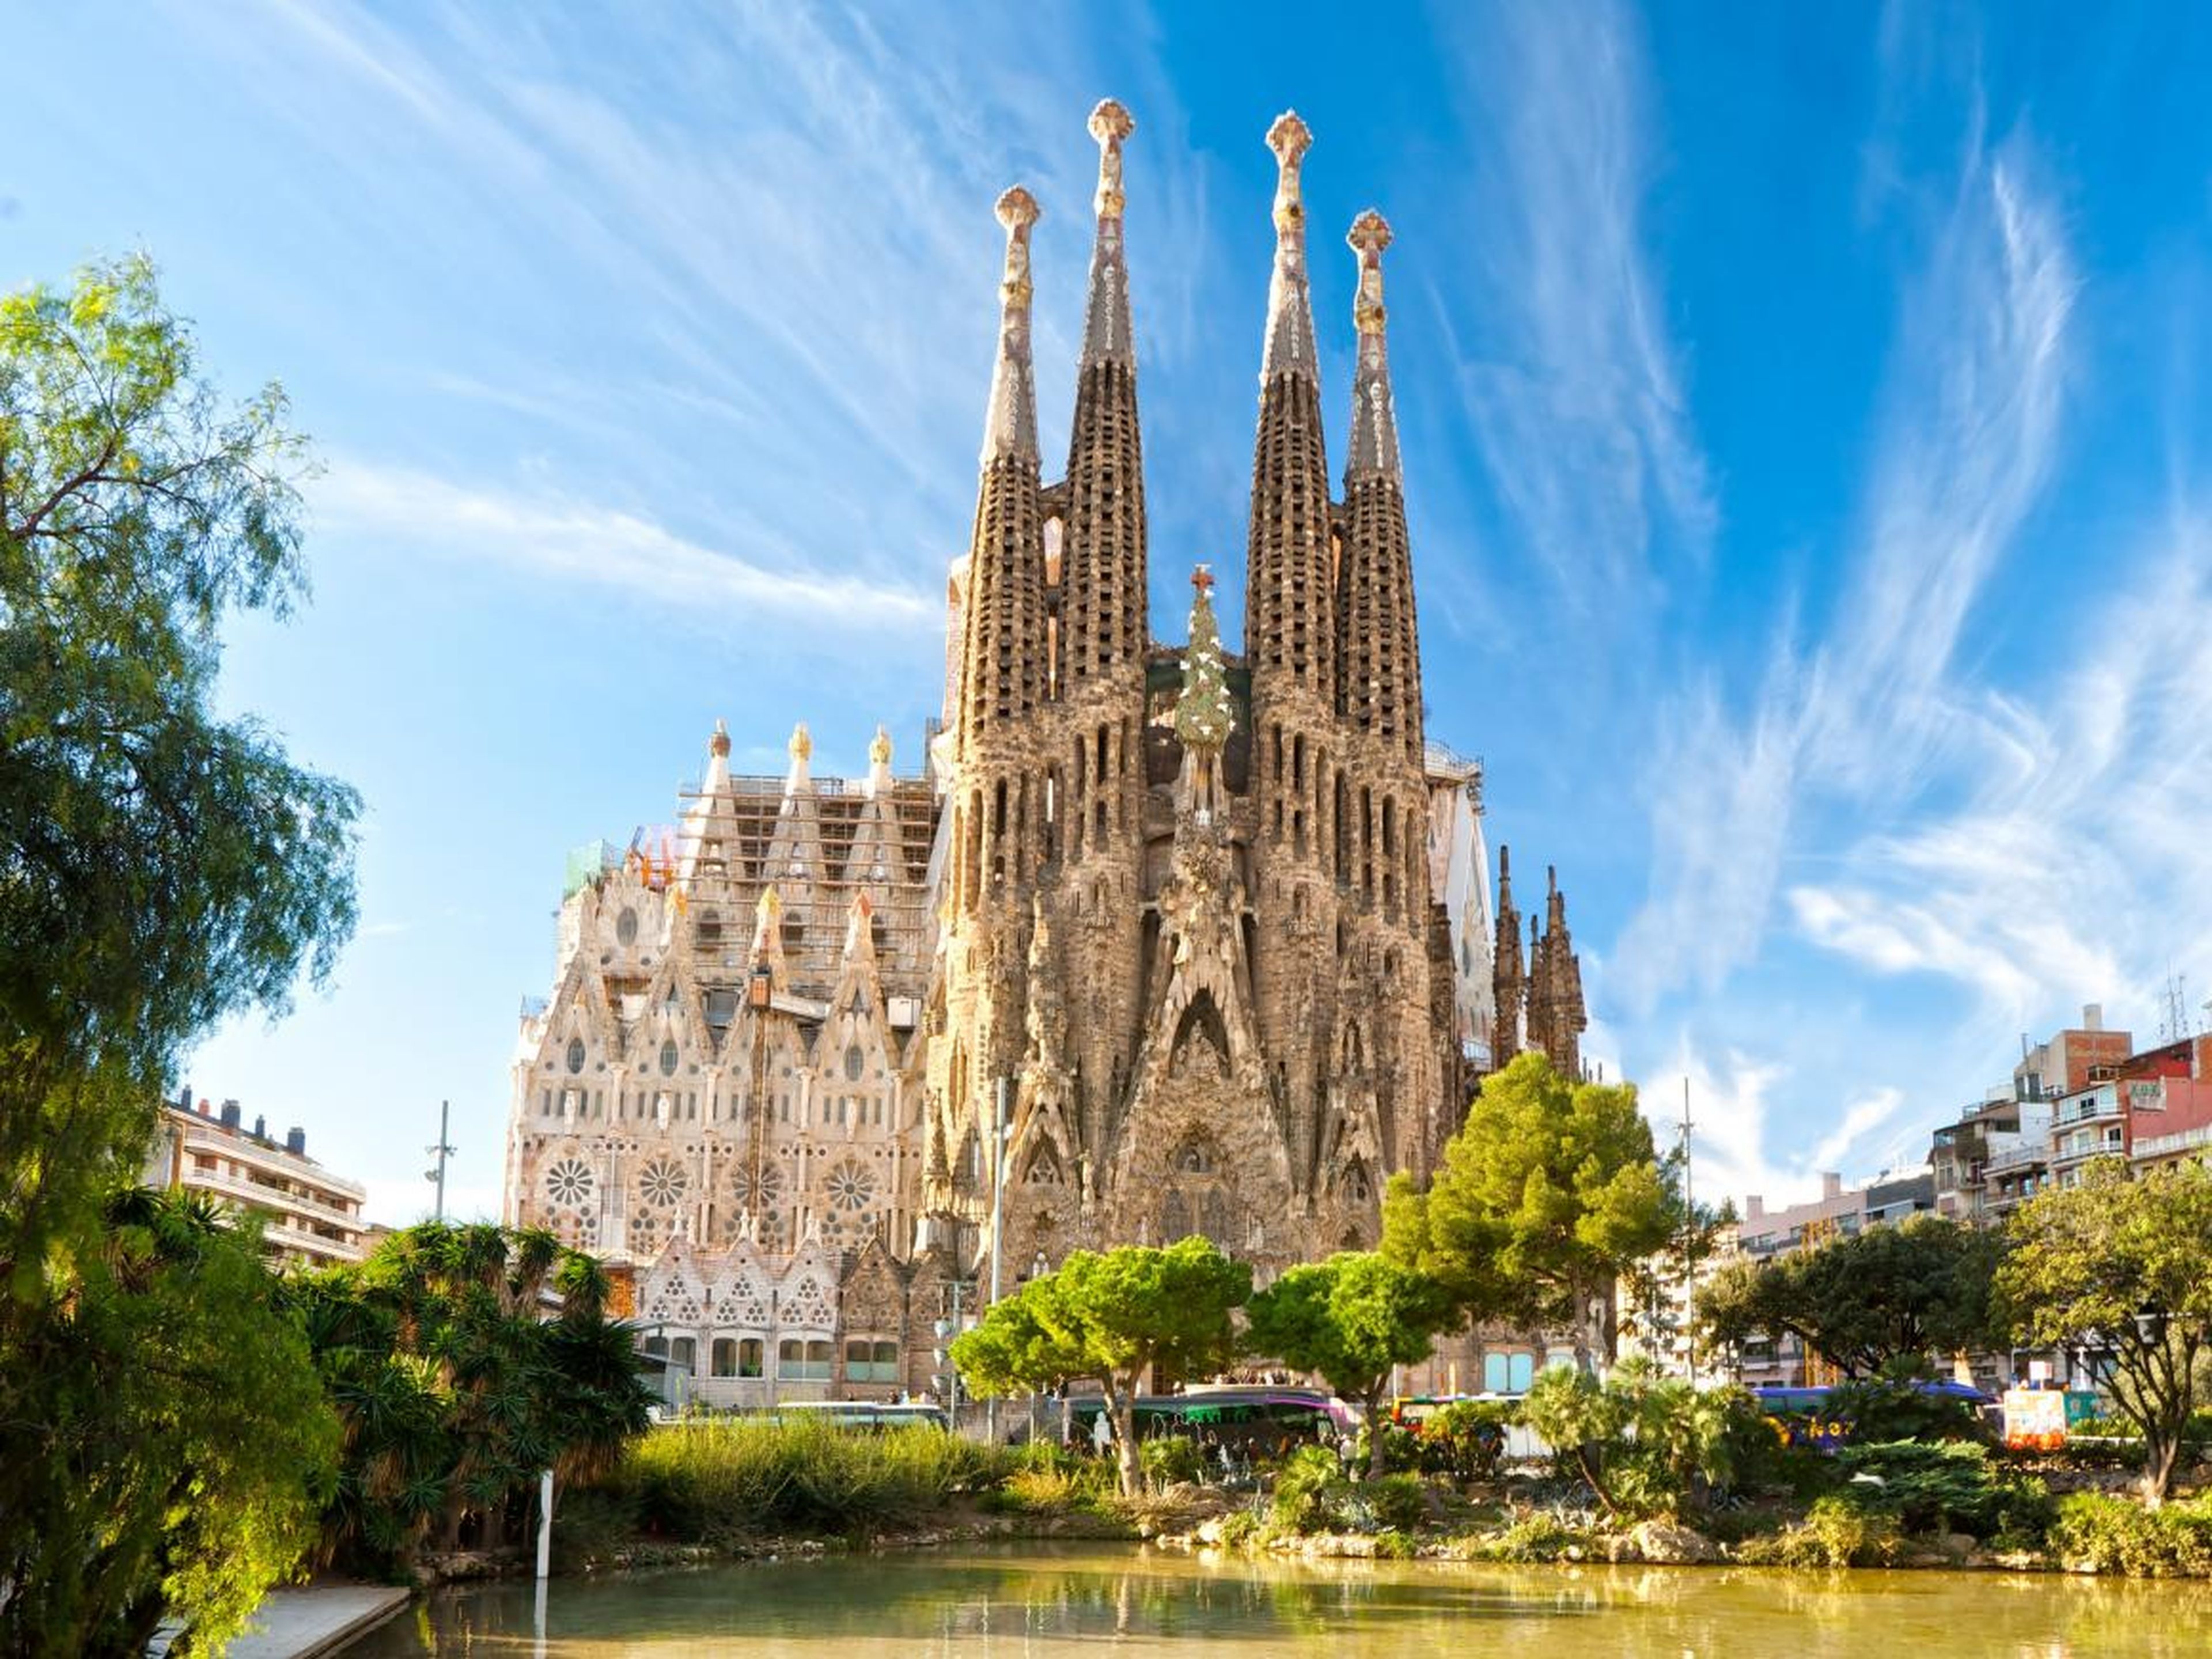 El arquitecto modernista Antoni Gaudí no vivió para ver terminada su Sagrada Familia, de hecho, todavía está en construcción. Según su sitio web, se espera que la construcción termine en 2026.